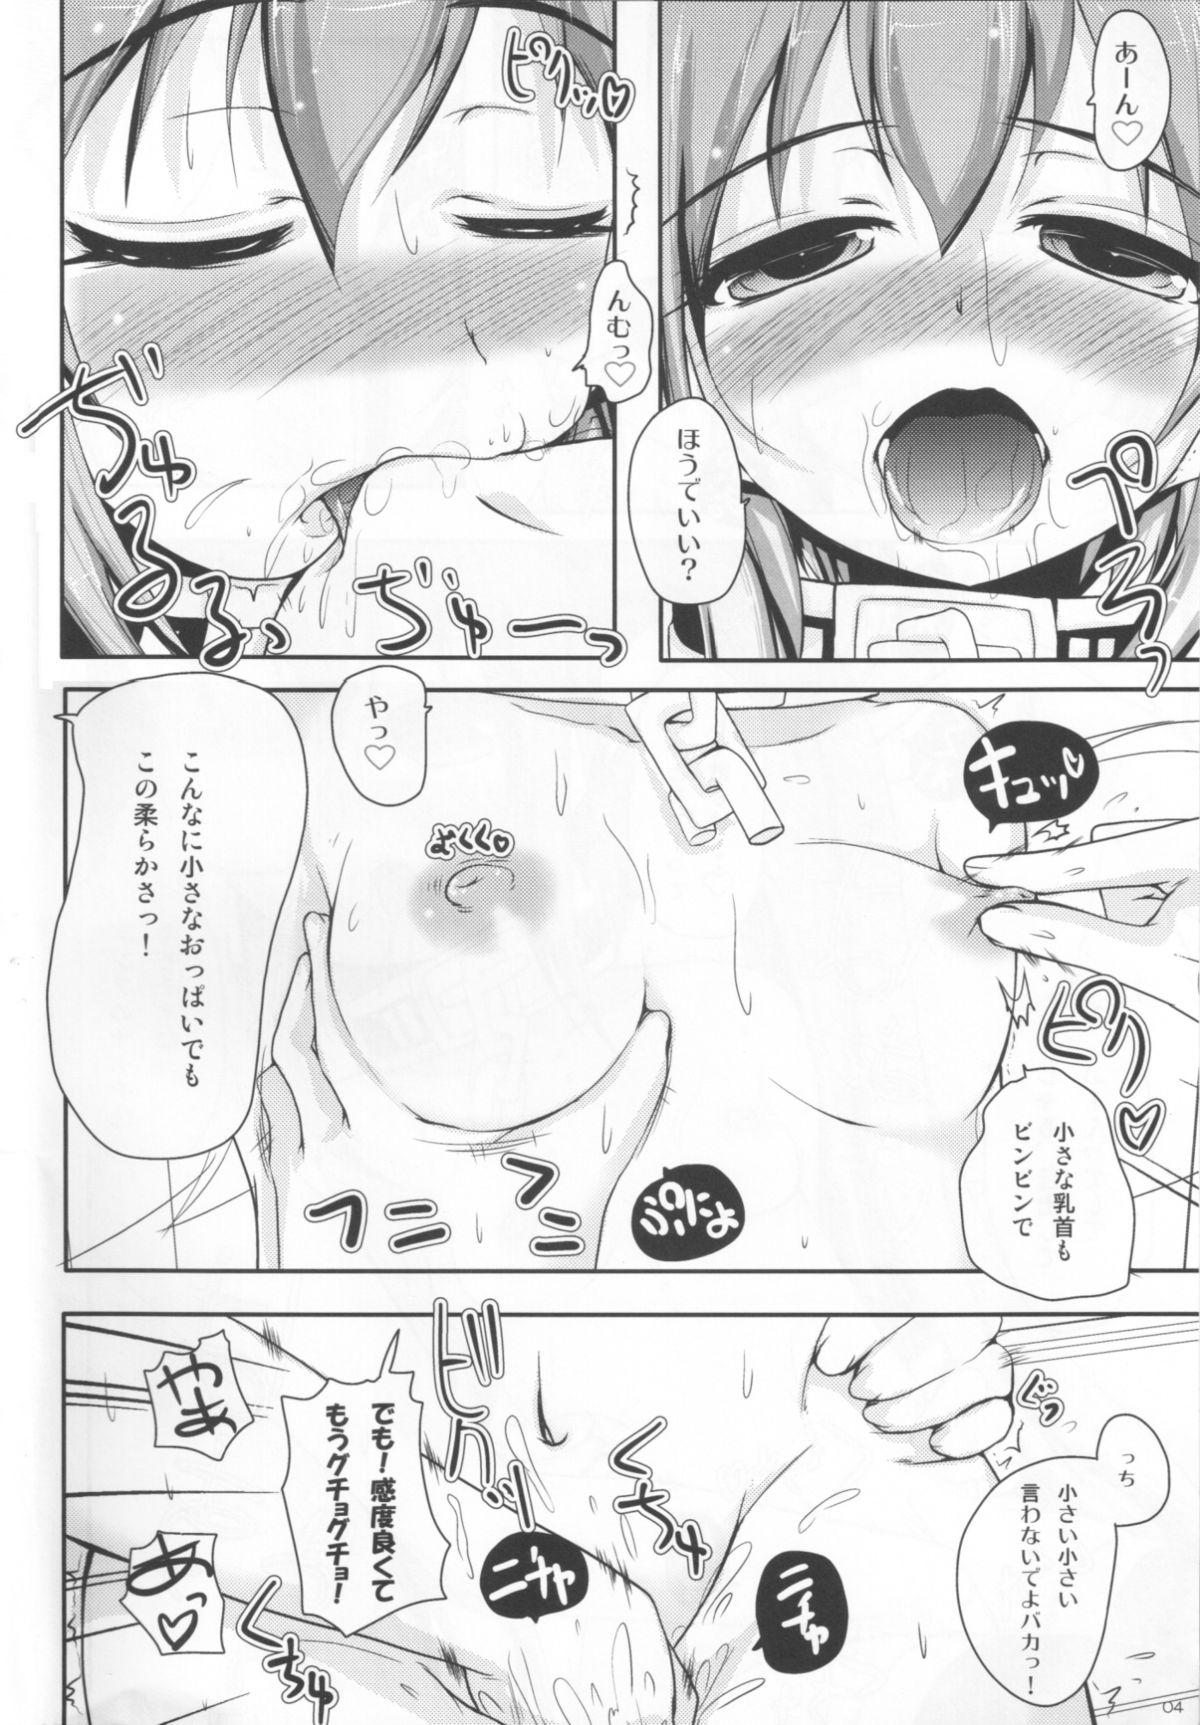 Bisexual Nymph to chuchu!3 - Sora no otoshimono Titten - Page 5